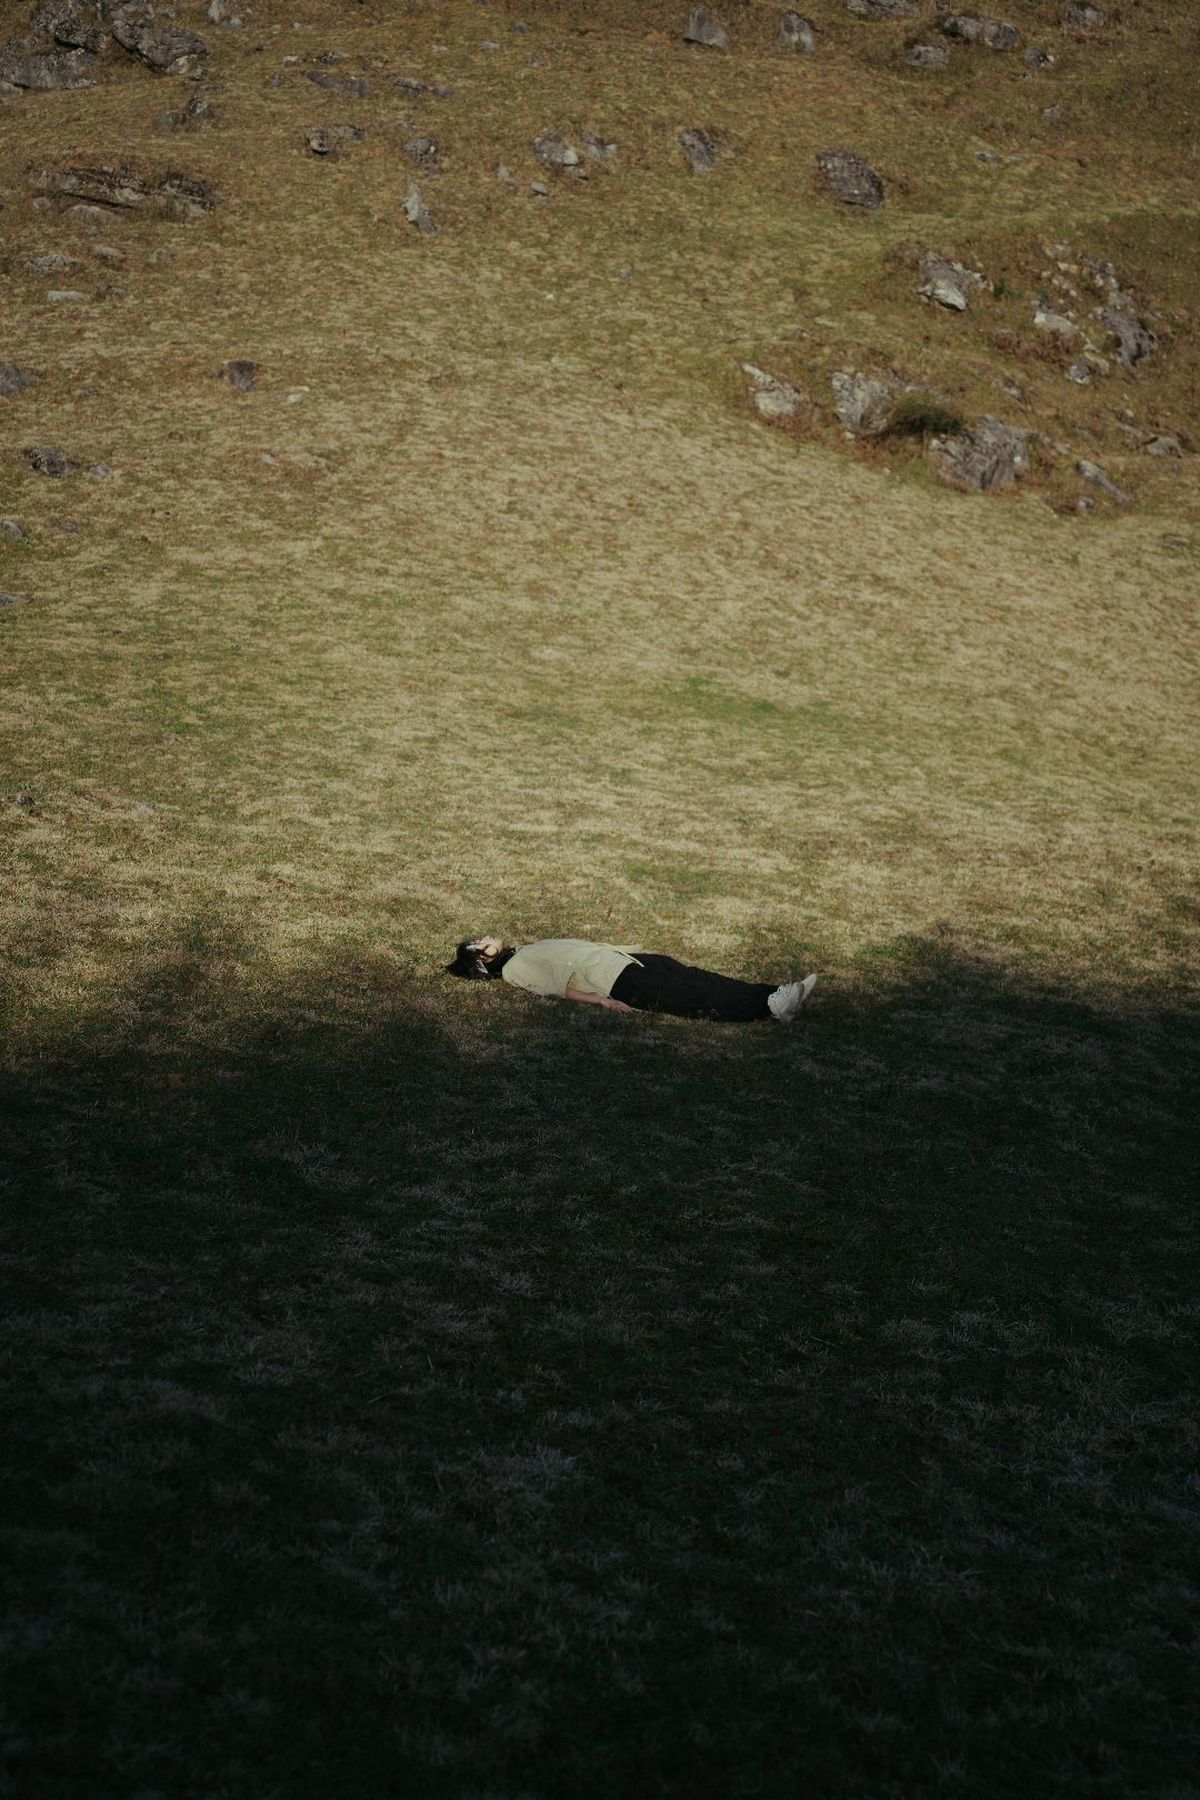 黑白相间的牛在绿色的草地上躺下 而一只黑白相间的狗站在山上。